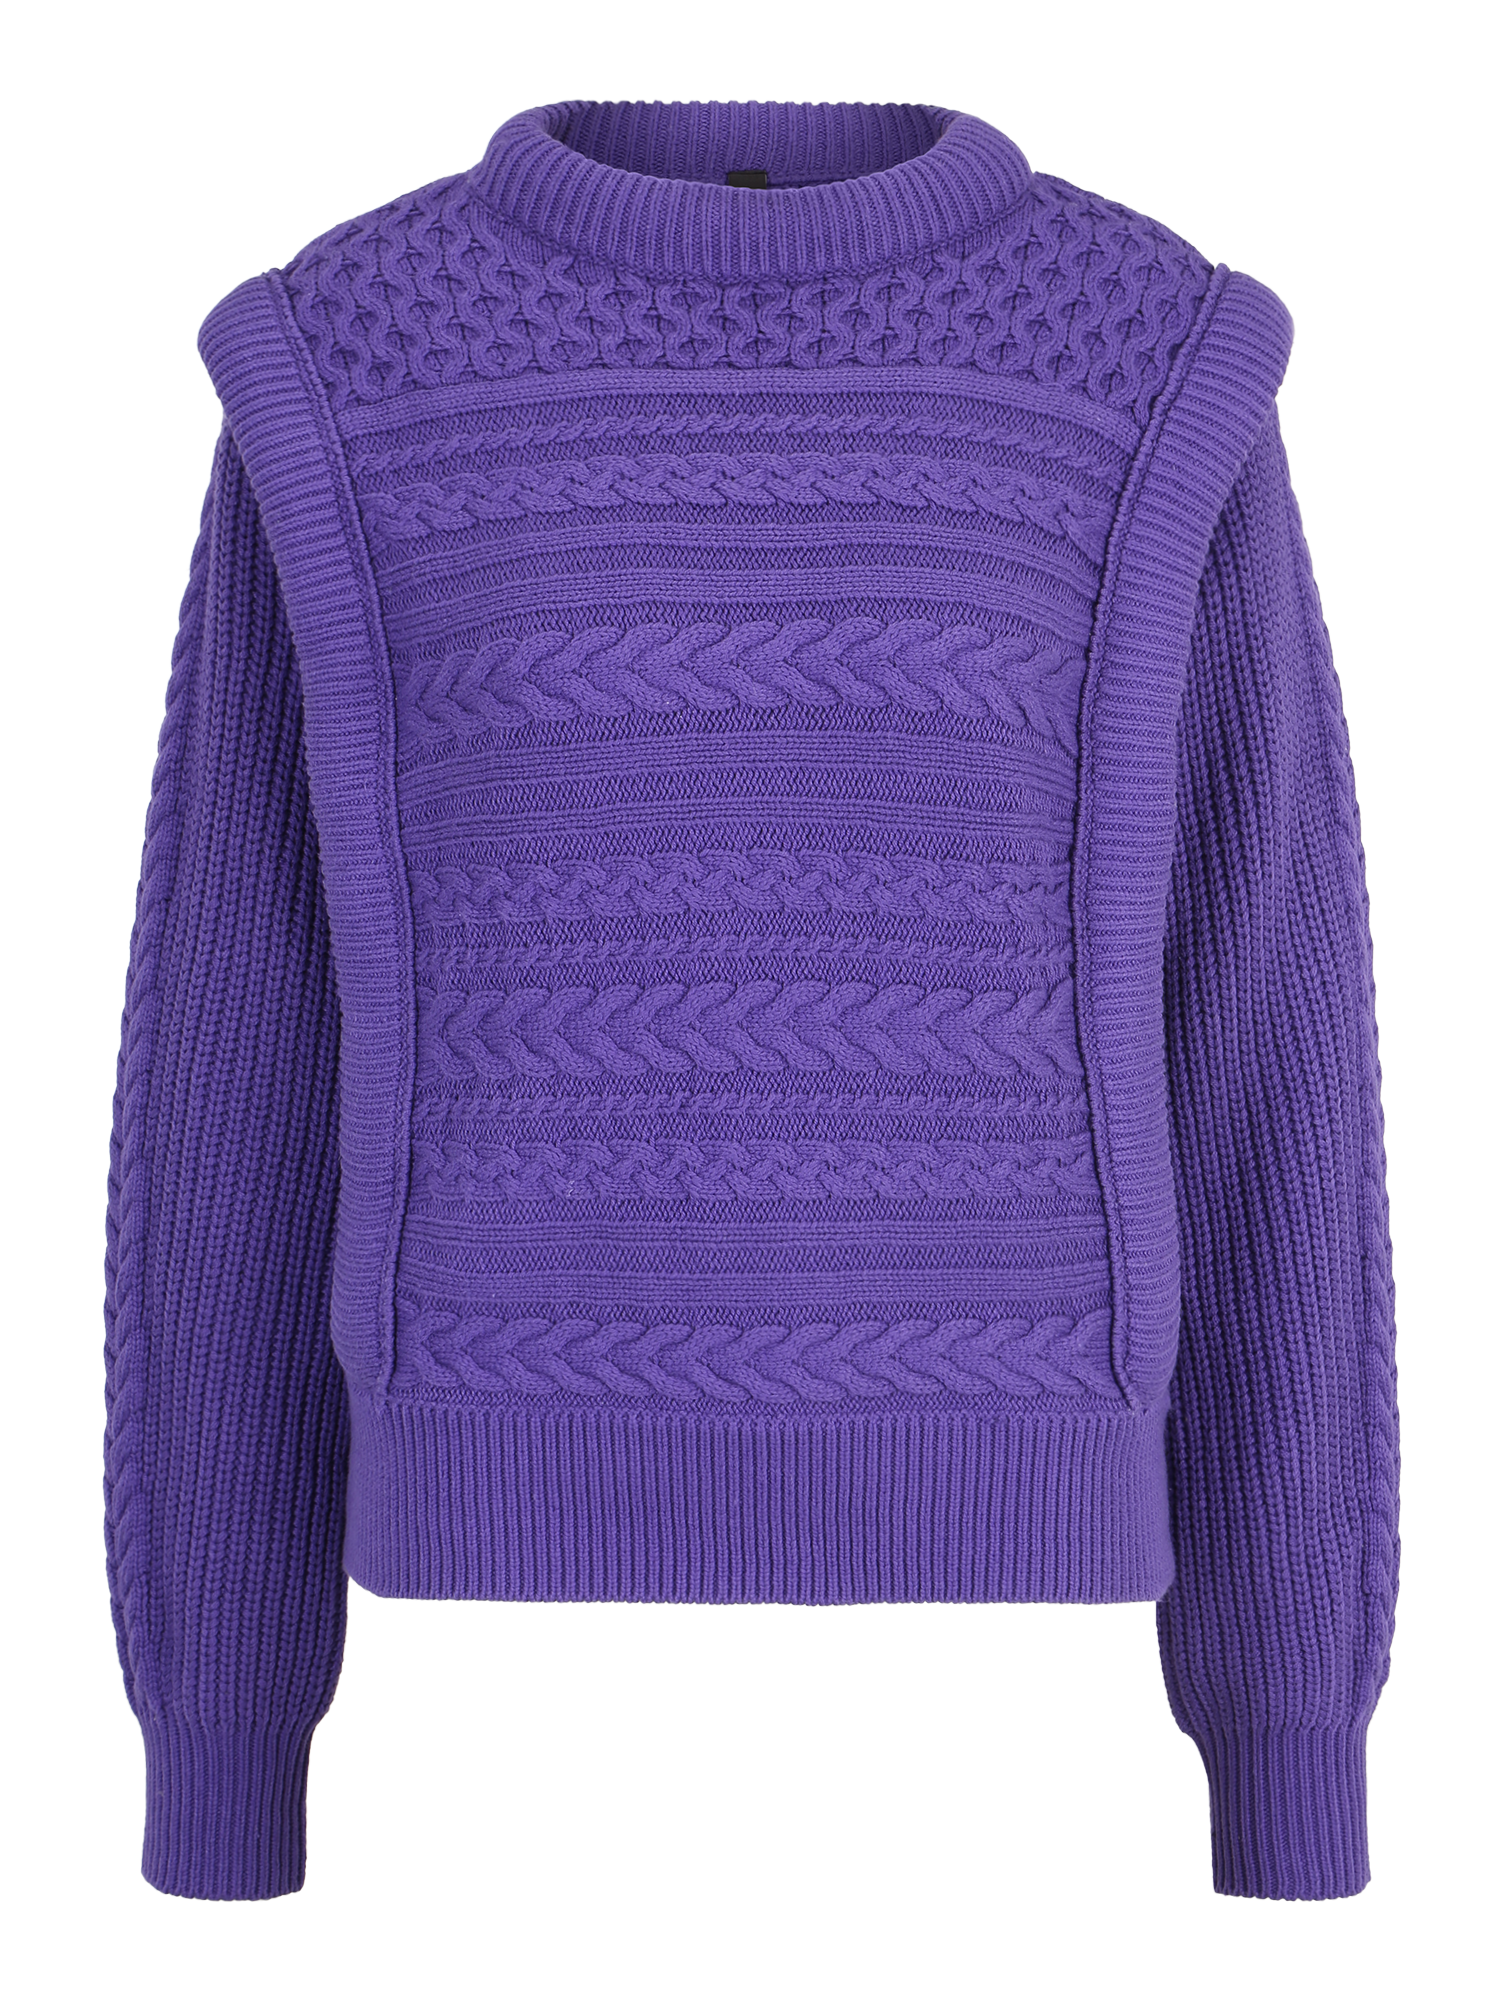 Swetry & dzianina Kobiety Y.A.S Tall Sweter w kolorze Ciemnofioletowym 